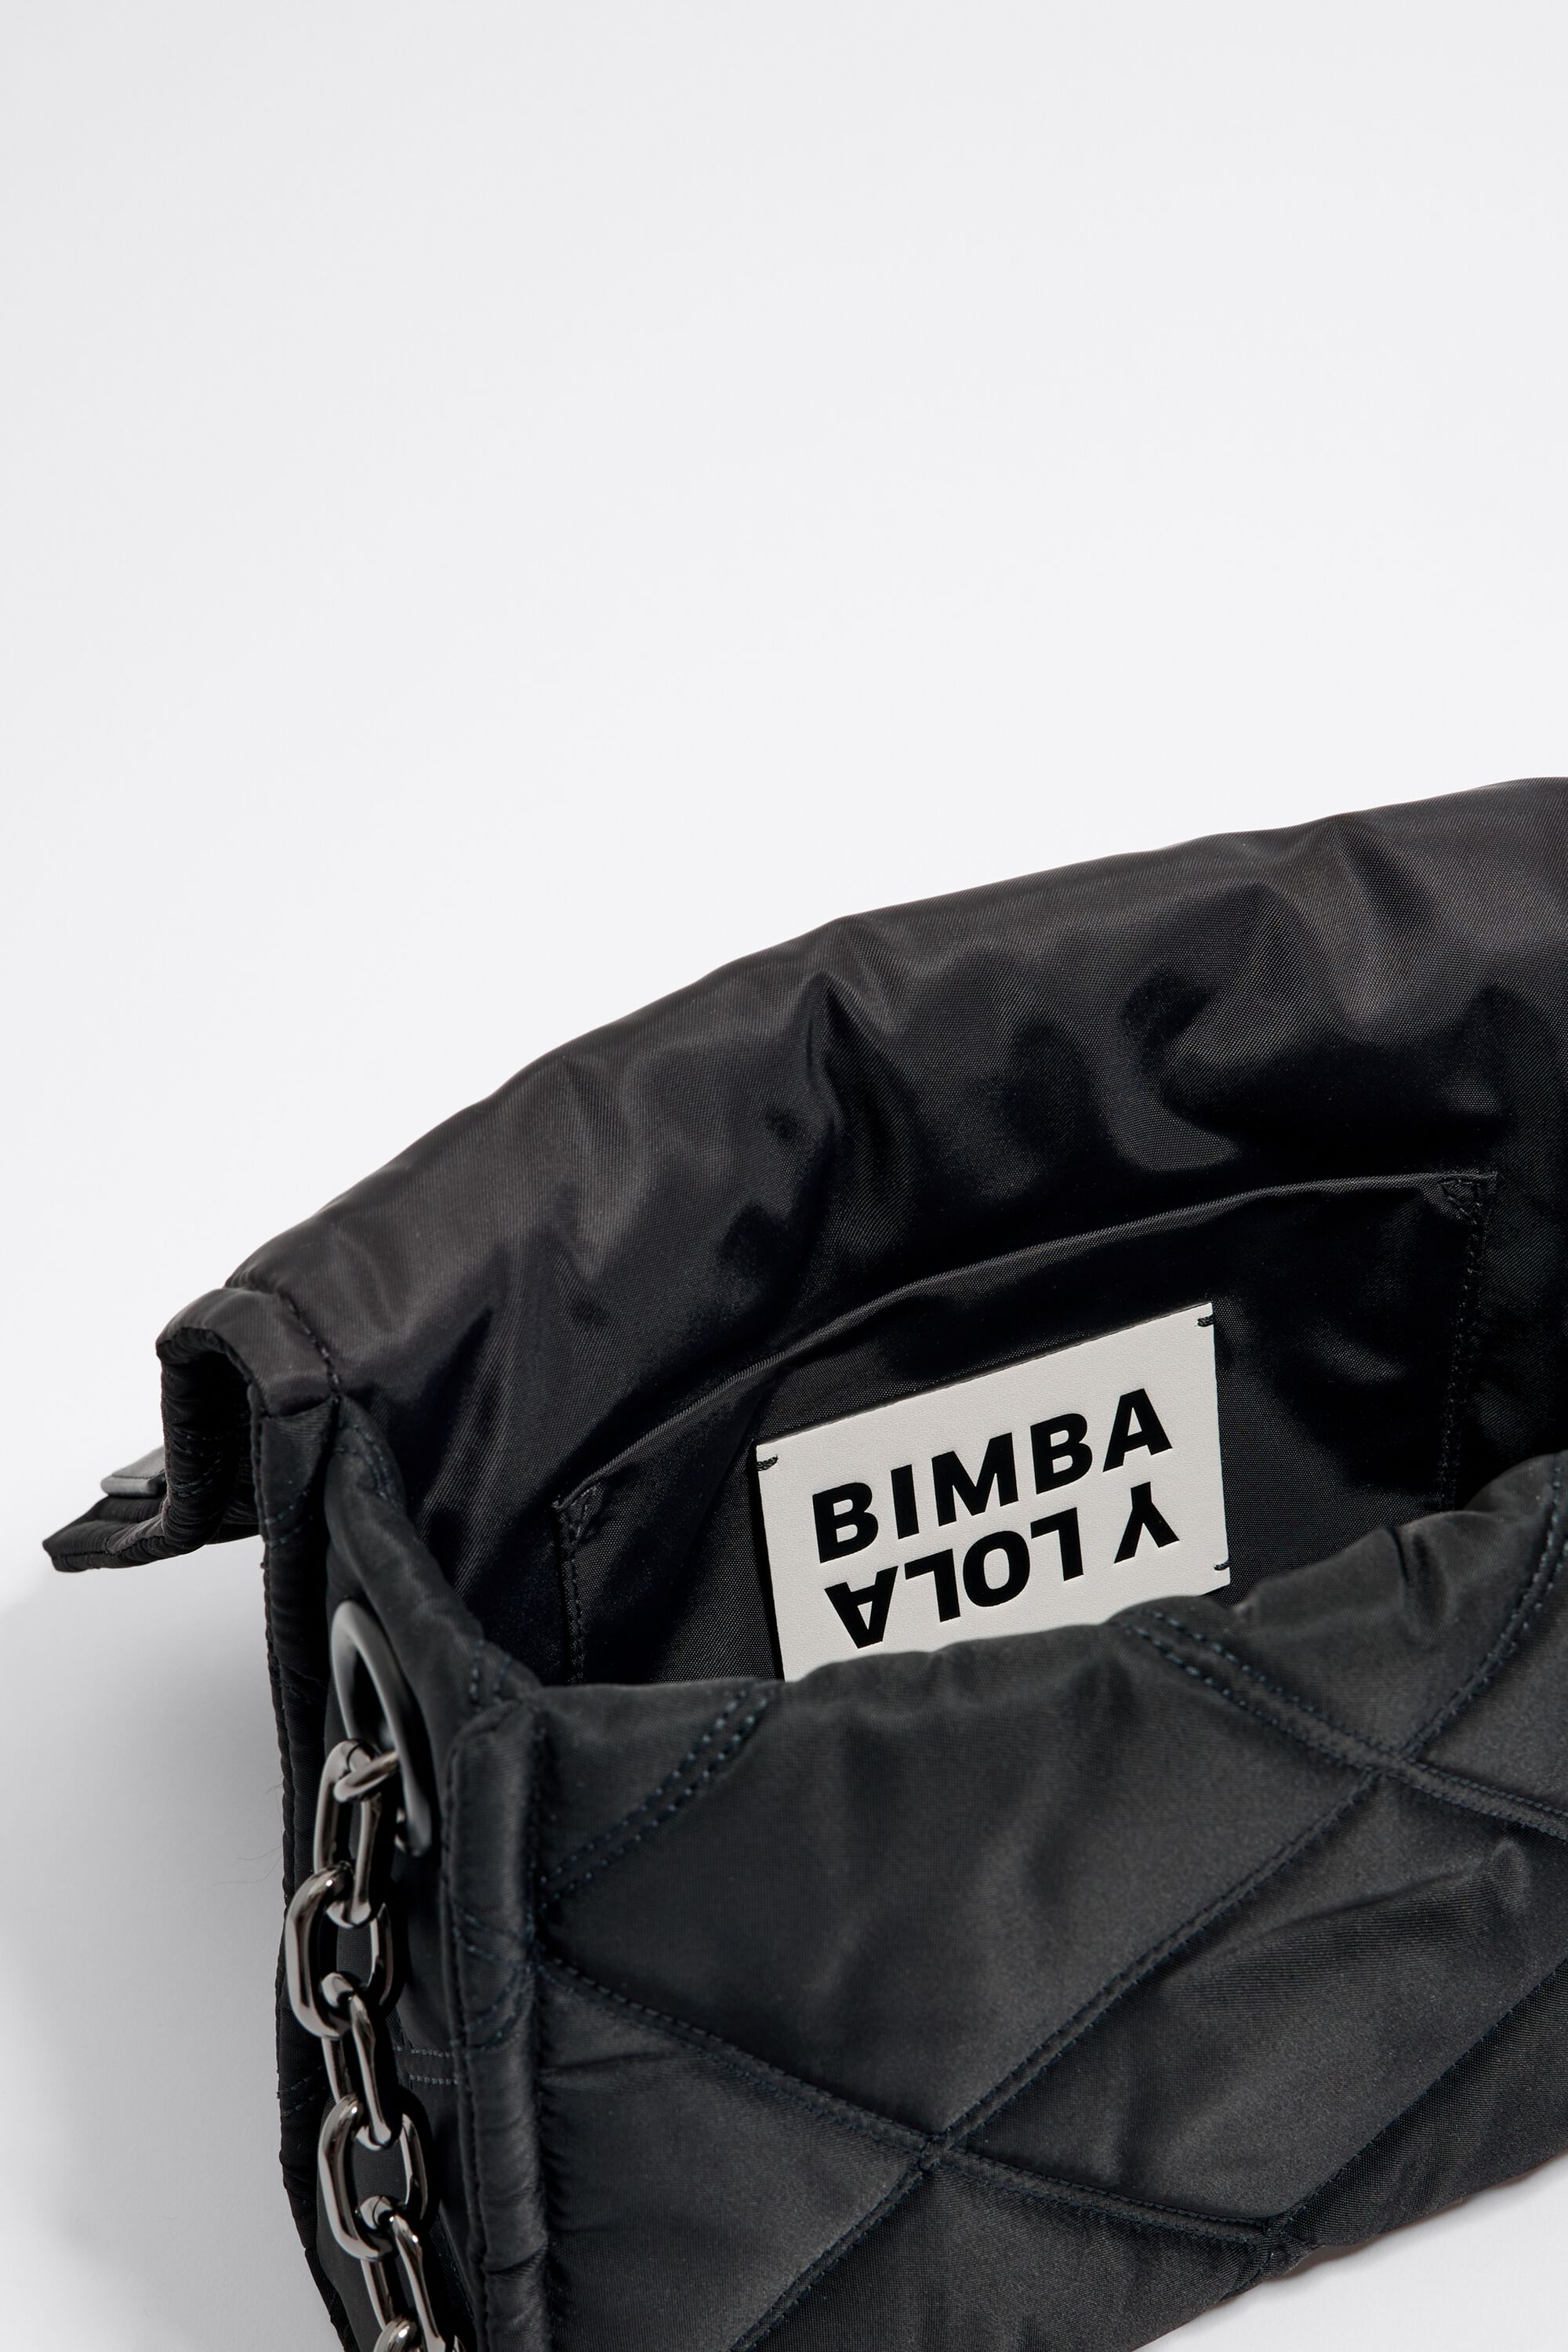 Women Shoulder Bags Bimba Y Lola Crossbody Bag Letter Design Wide Shoulder  Strap